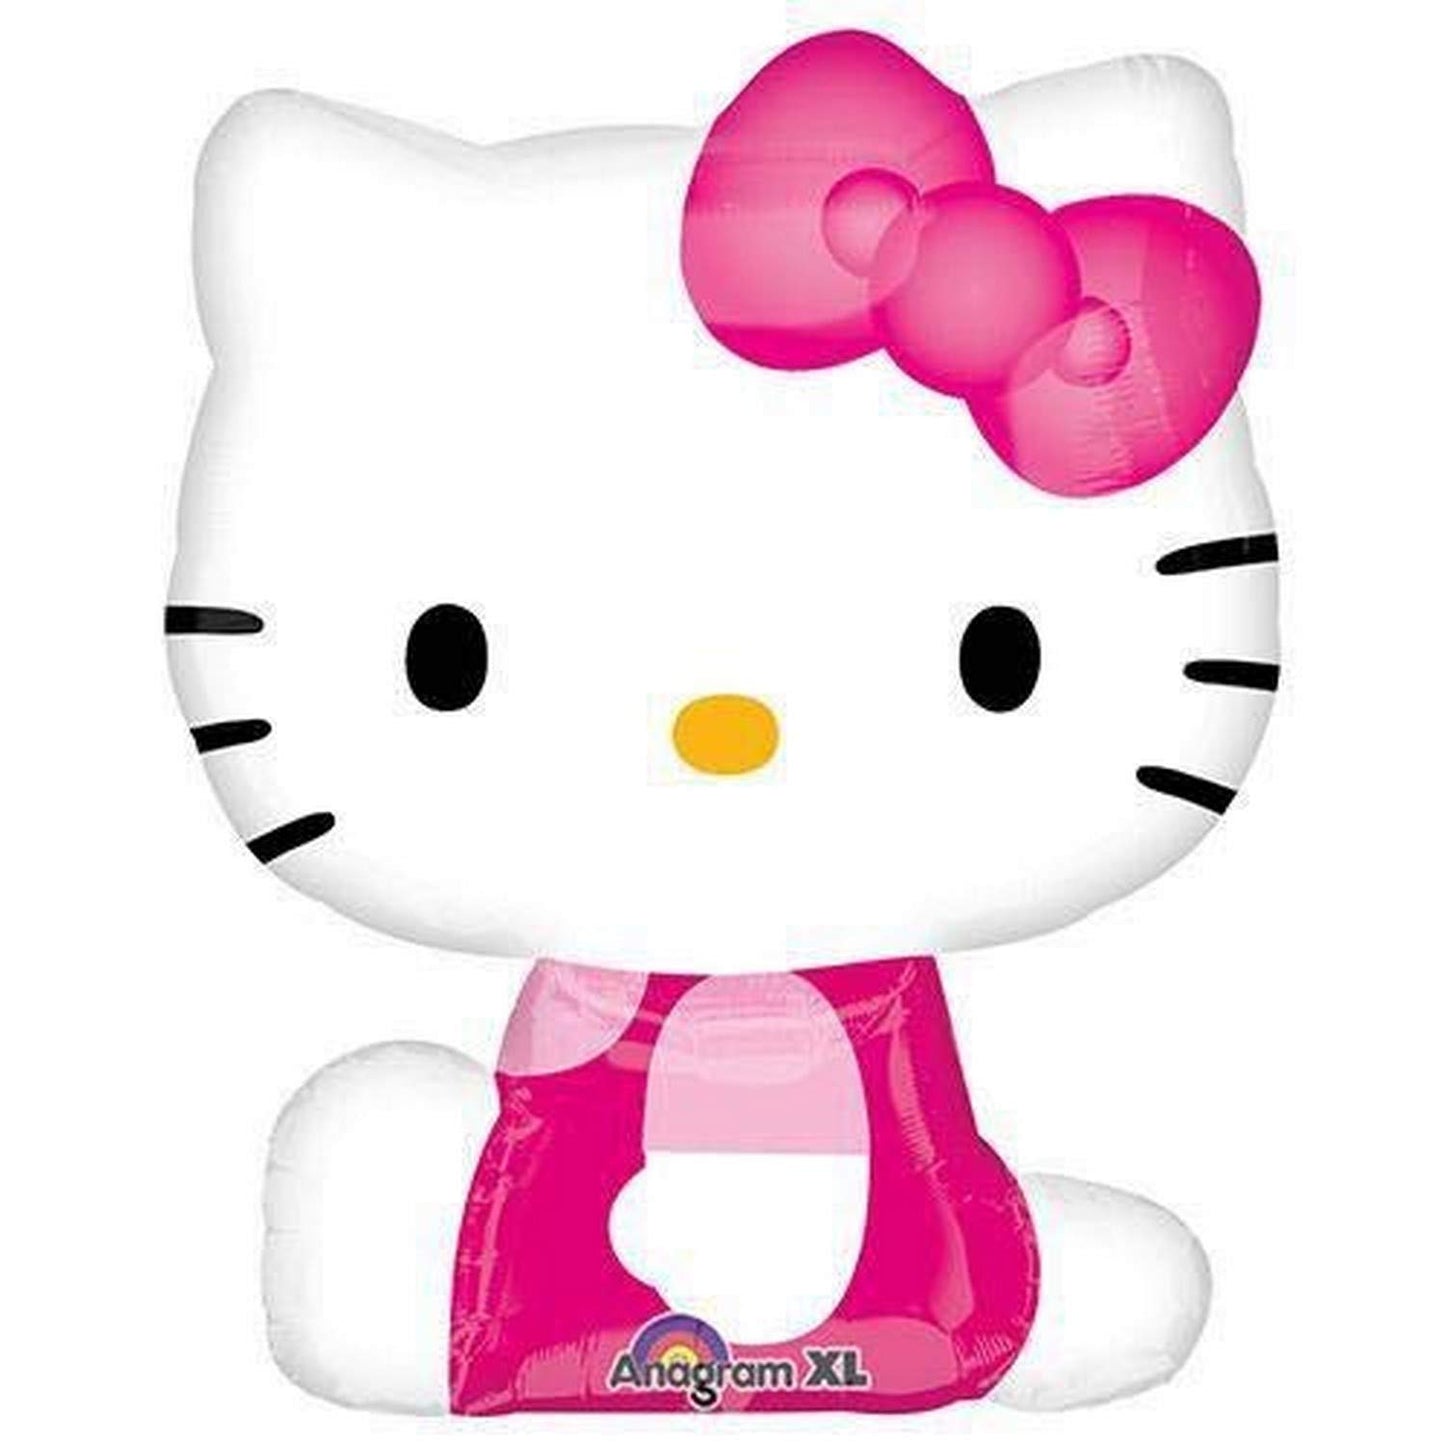 Hello Kitty Shape Foil Balloon